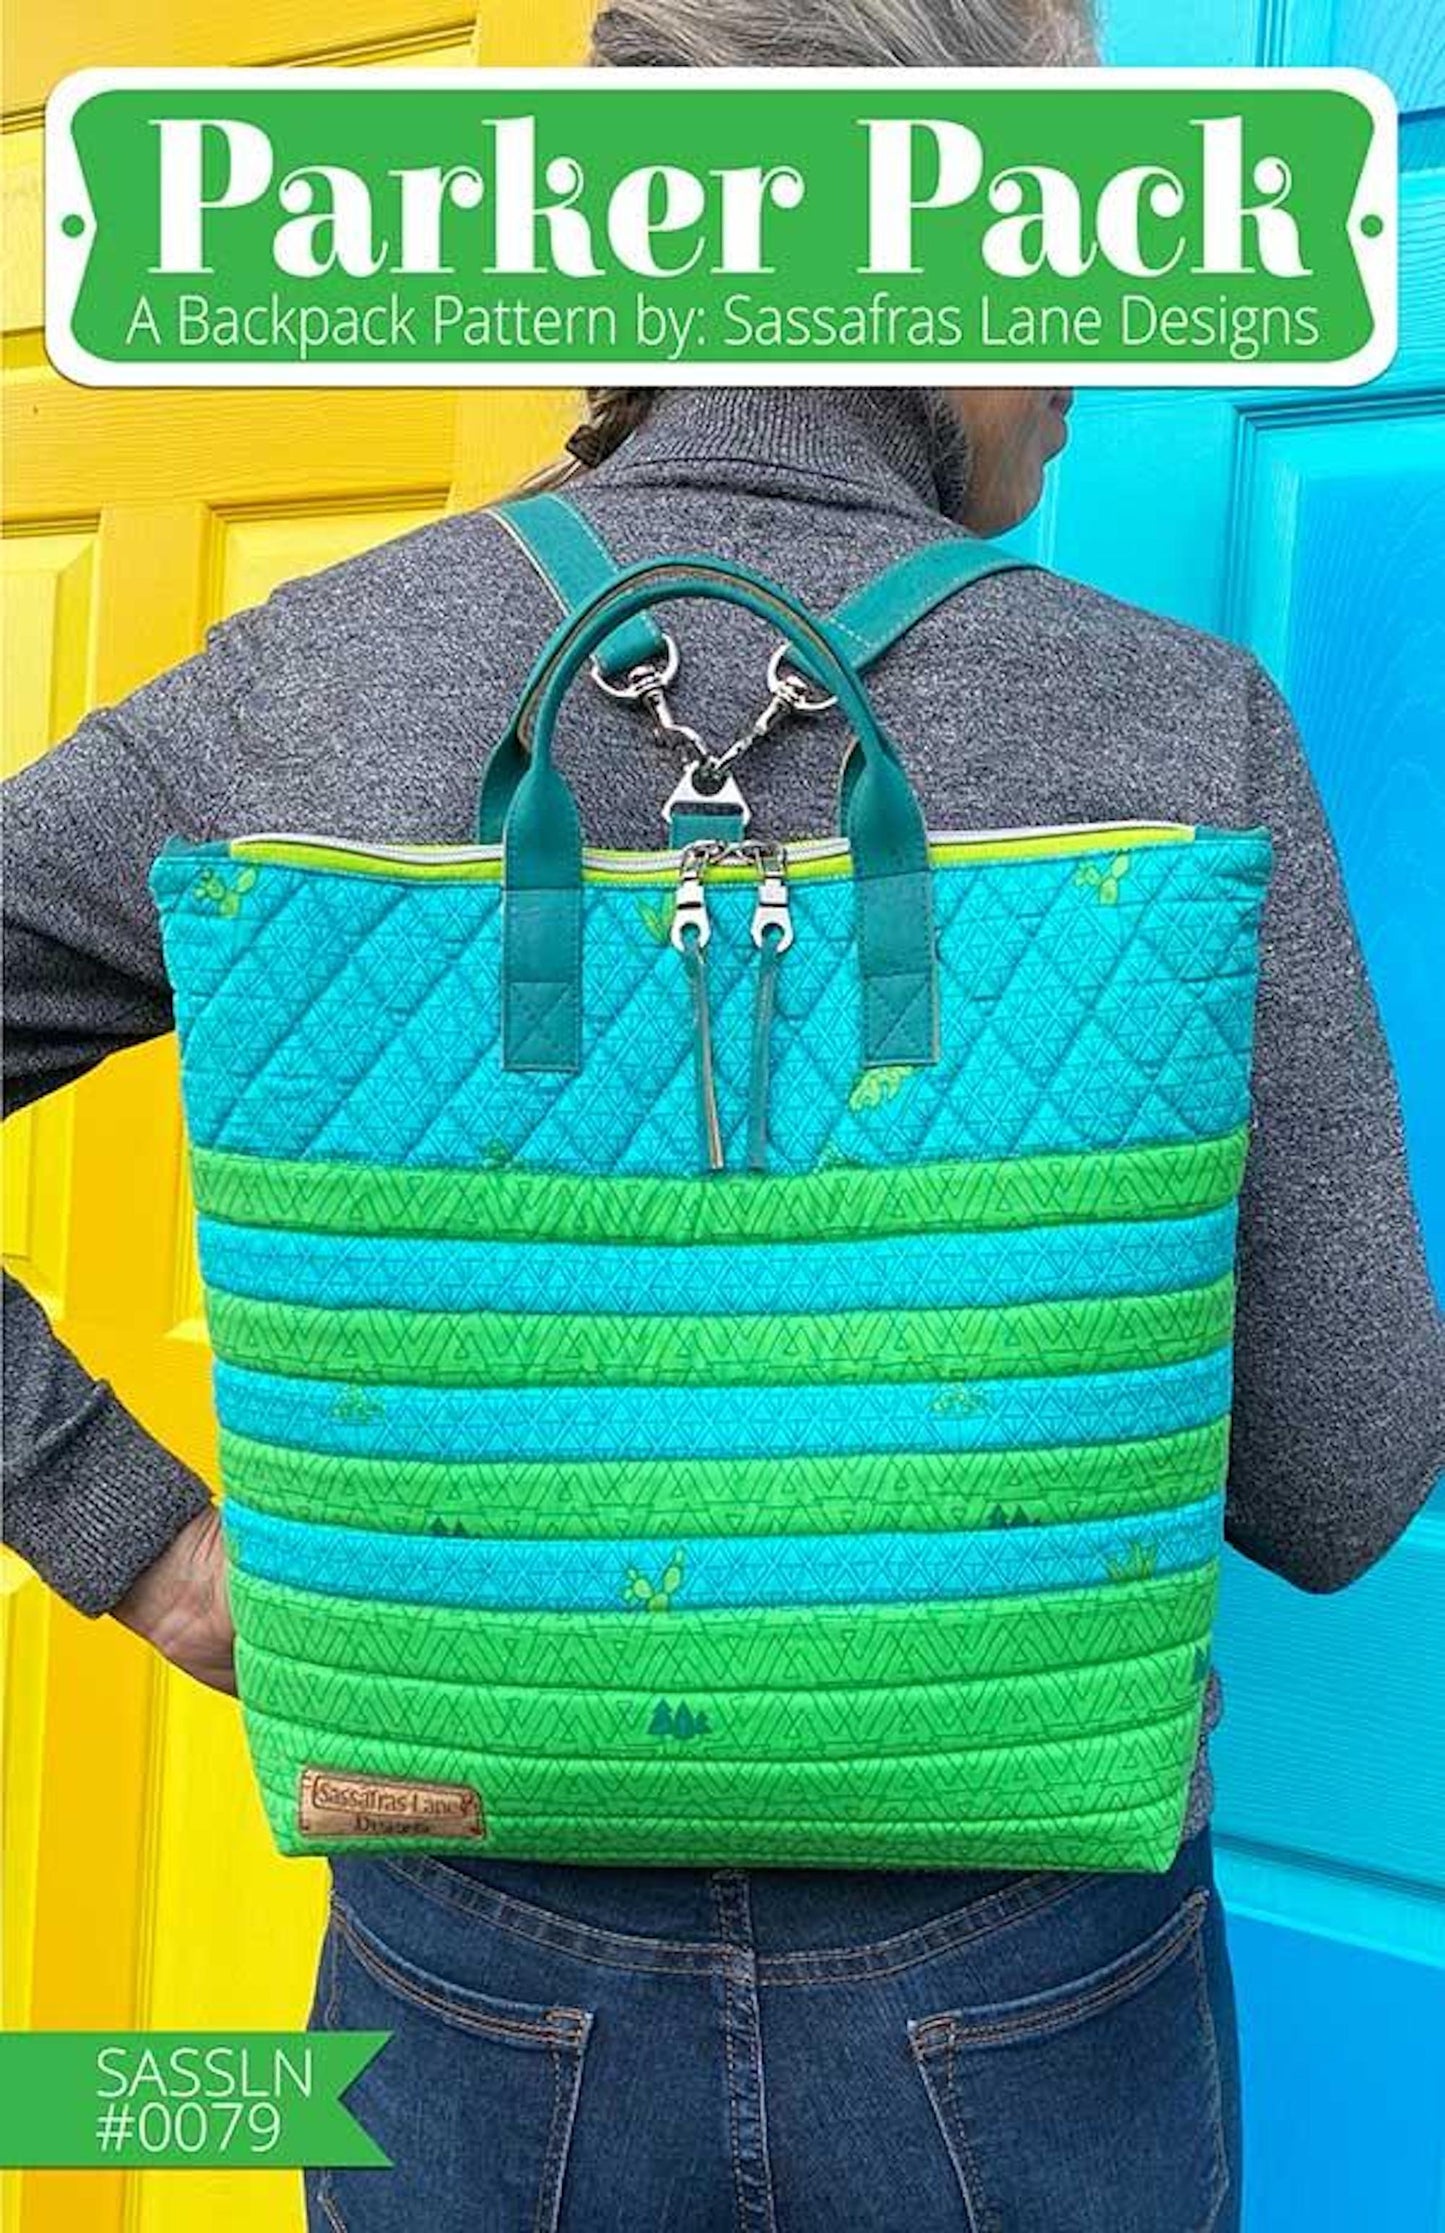 Parker Pack Backpack Pattern